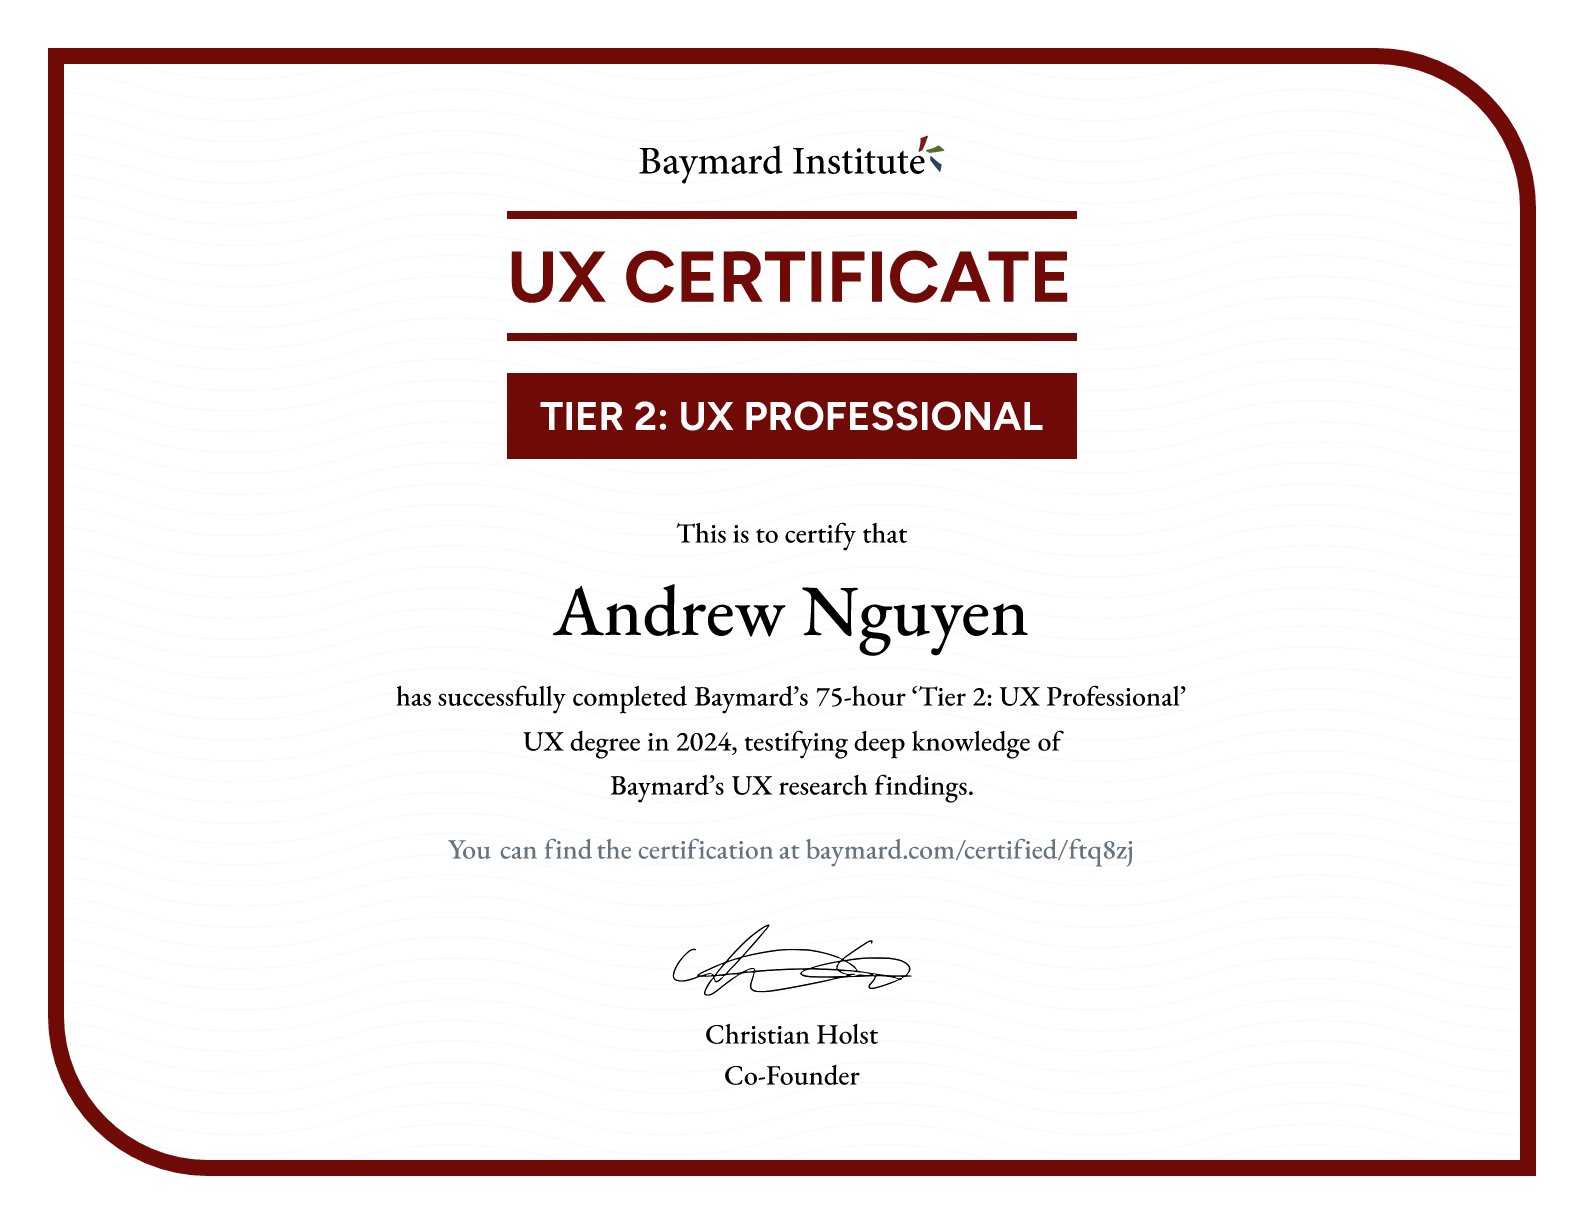 Andrew Nguyen’s certificate